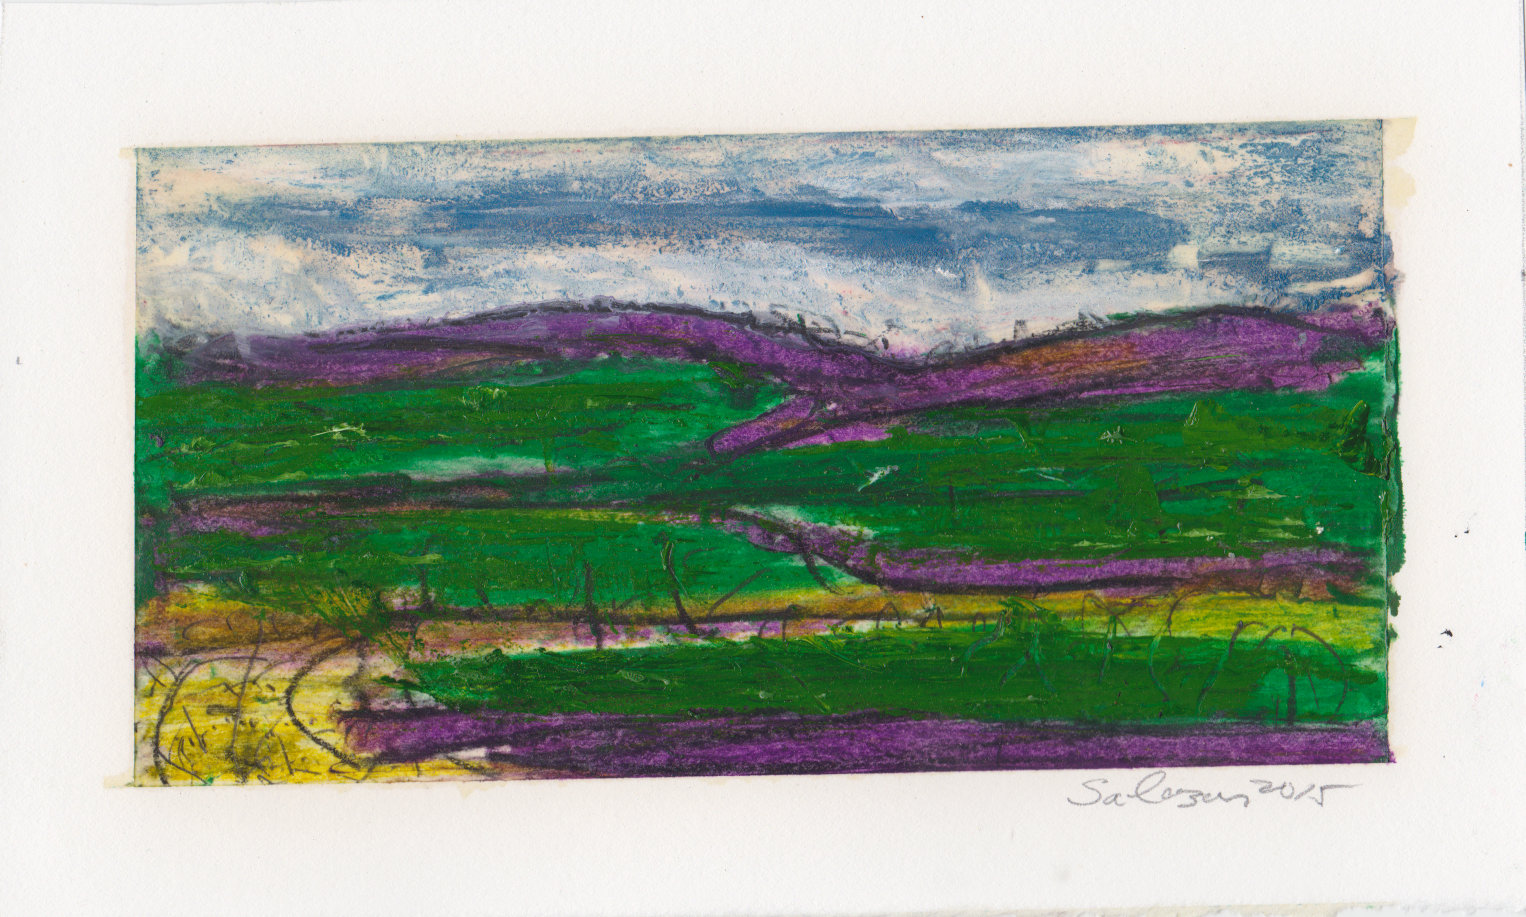 Landscape Series 2015 (Image size 4 x 8; paper size 6 1/4 X 10)